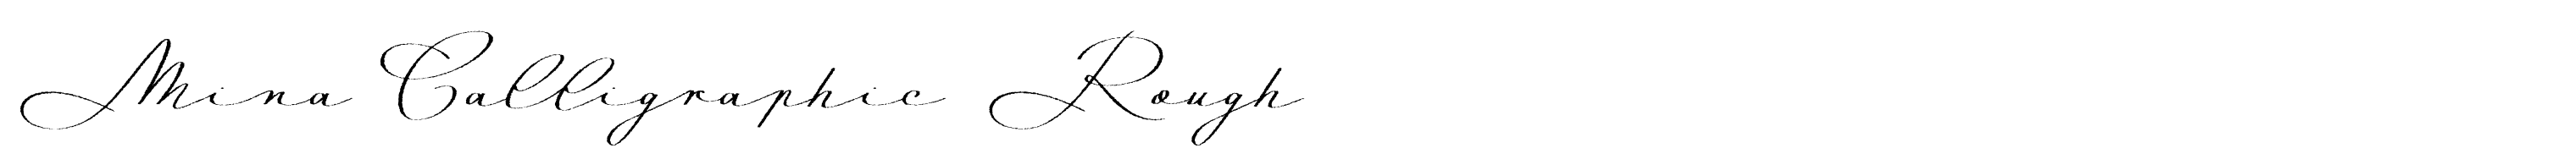 Mina Calligraphic Rough